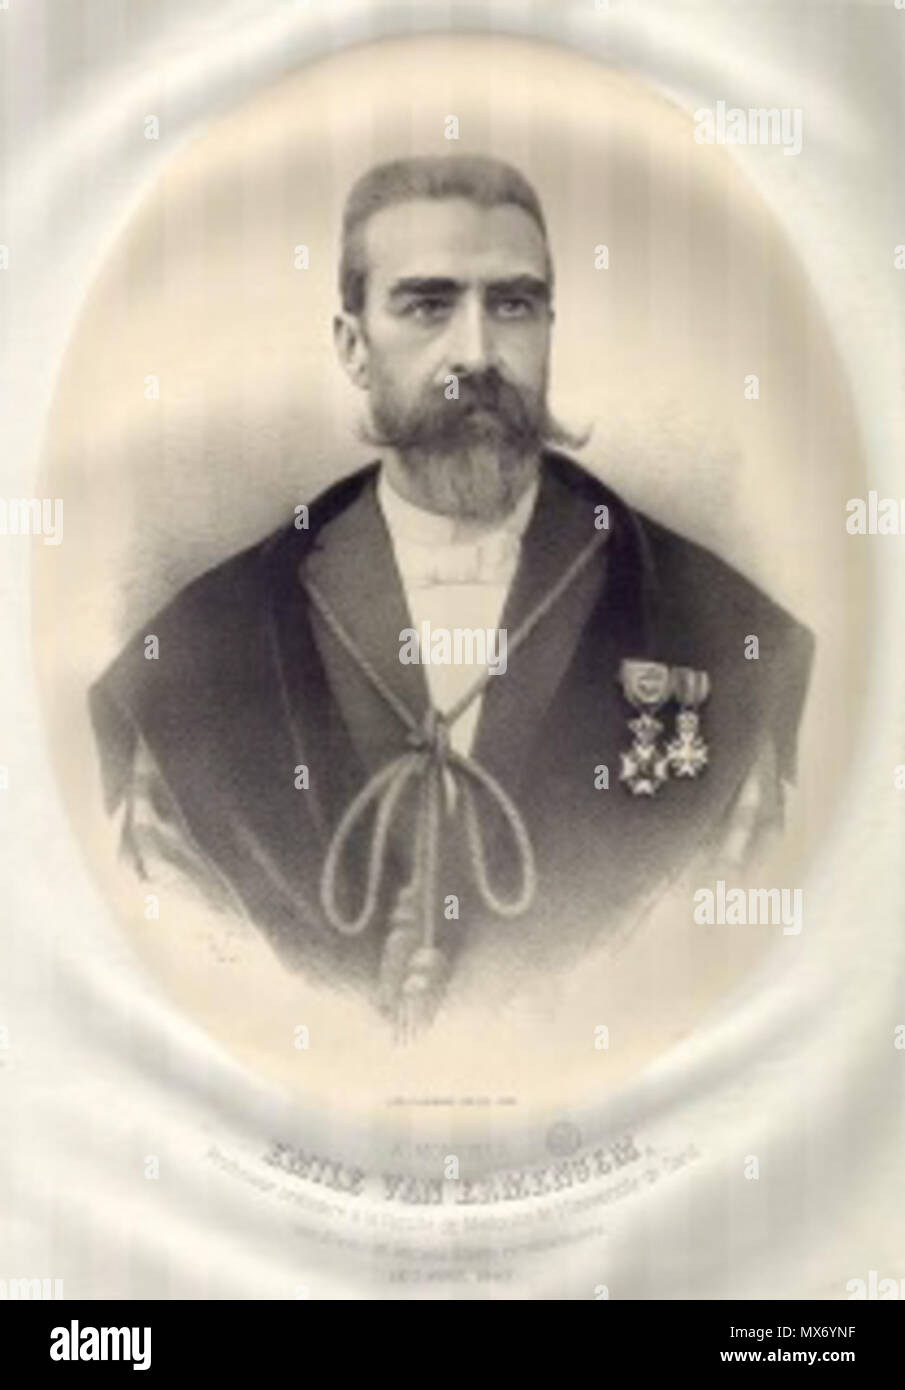 . Inglese: Émile van Ermengem (1851-1932), bacteriologist belga . 1897. Florimond Van Loo (1823 -?) 193 Ermengem Foto Stock